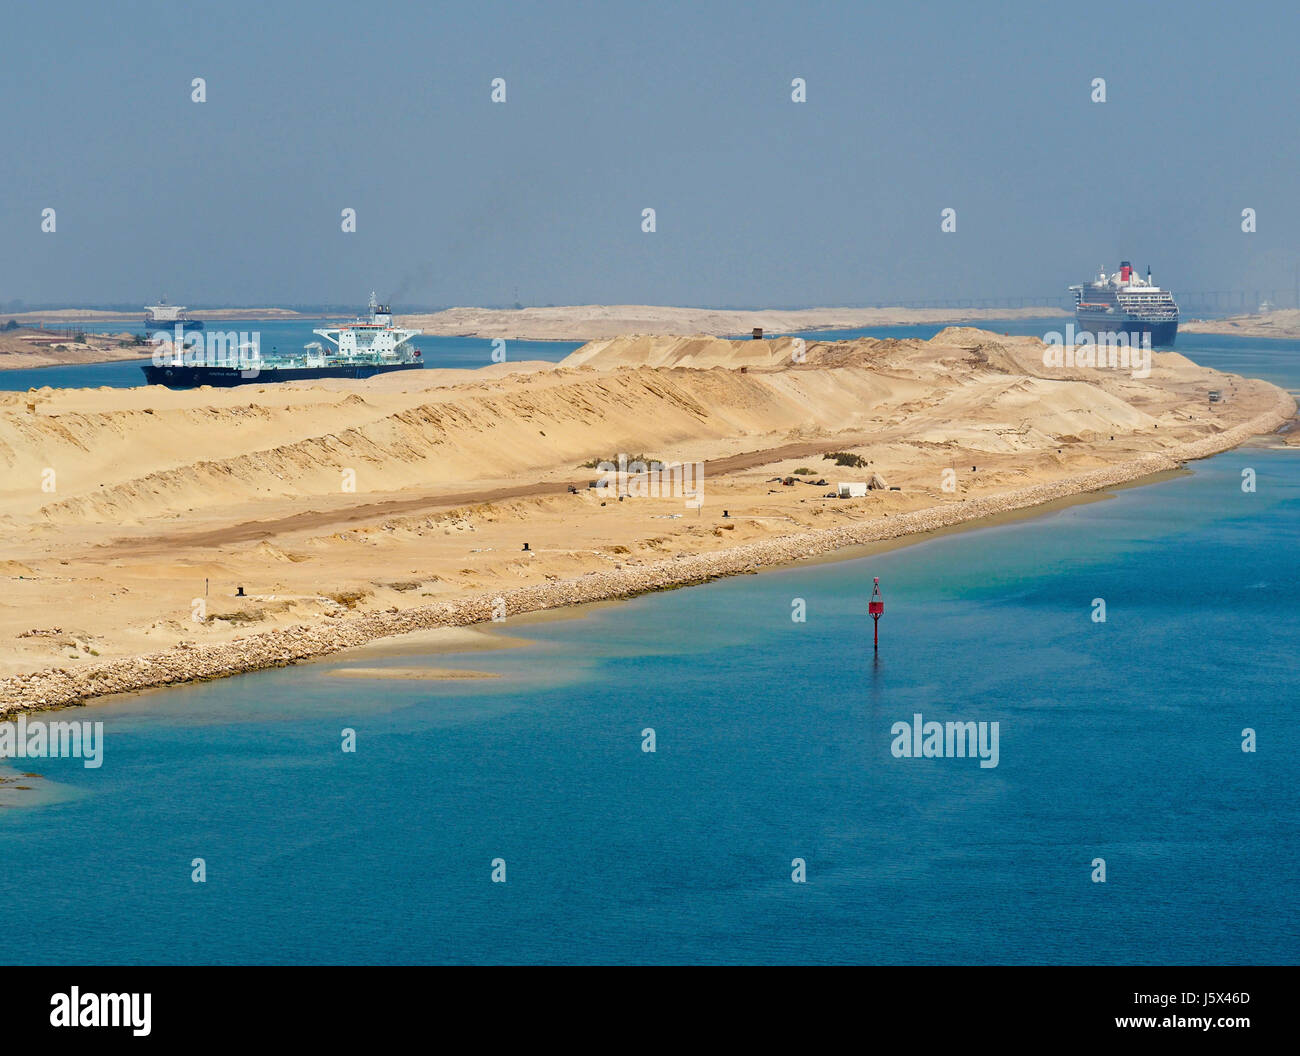 Nuova sezione del canale di Suez con due vie di traffico, Queen Mary 2 guidato del nord nel canale di destra e petroliere andando a sud a sinistra. Foto Stock